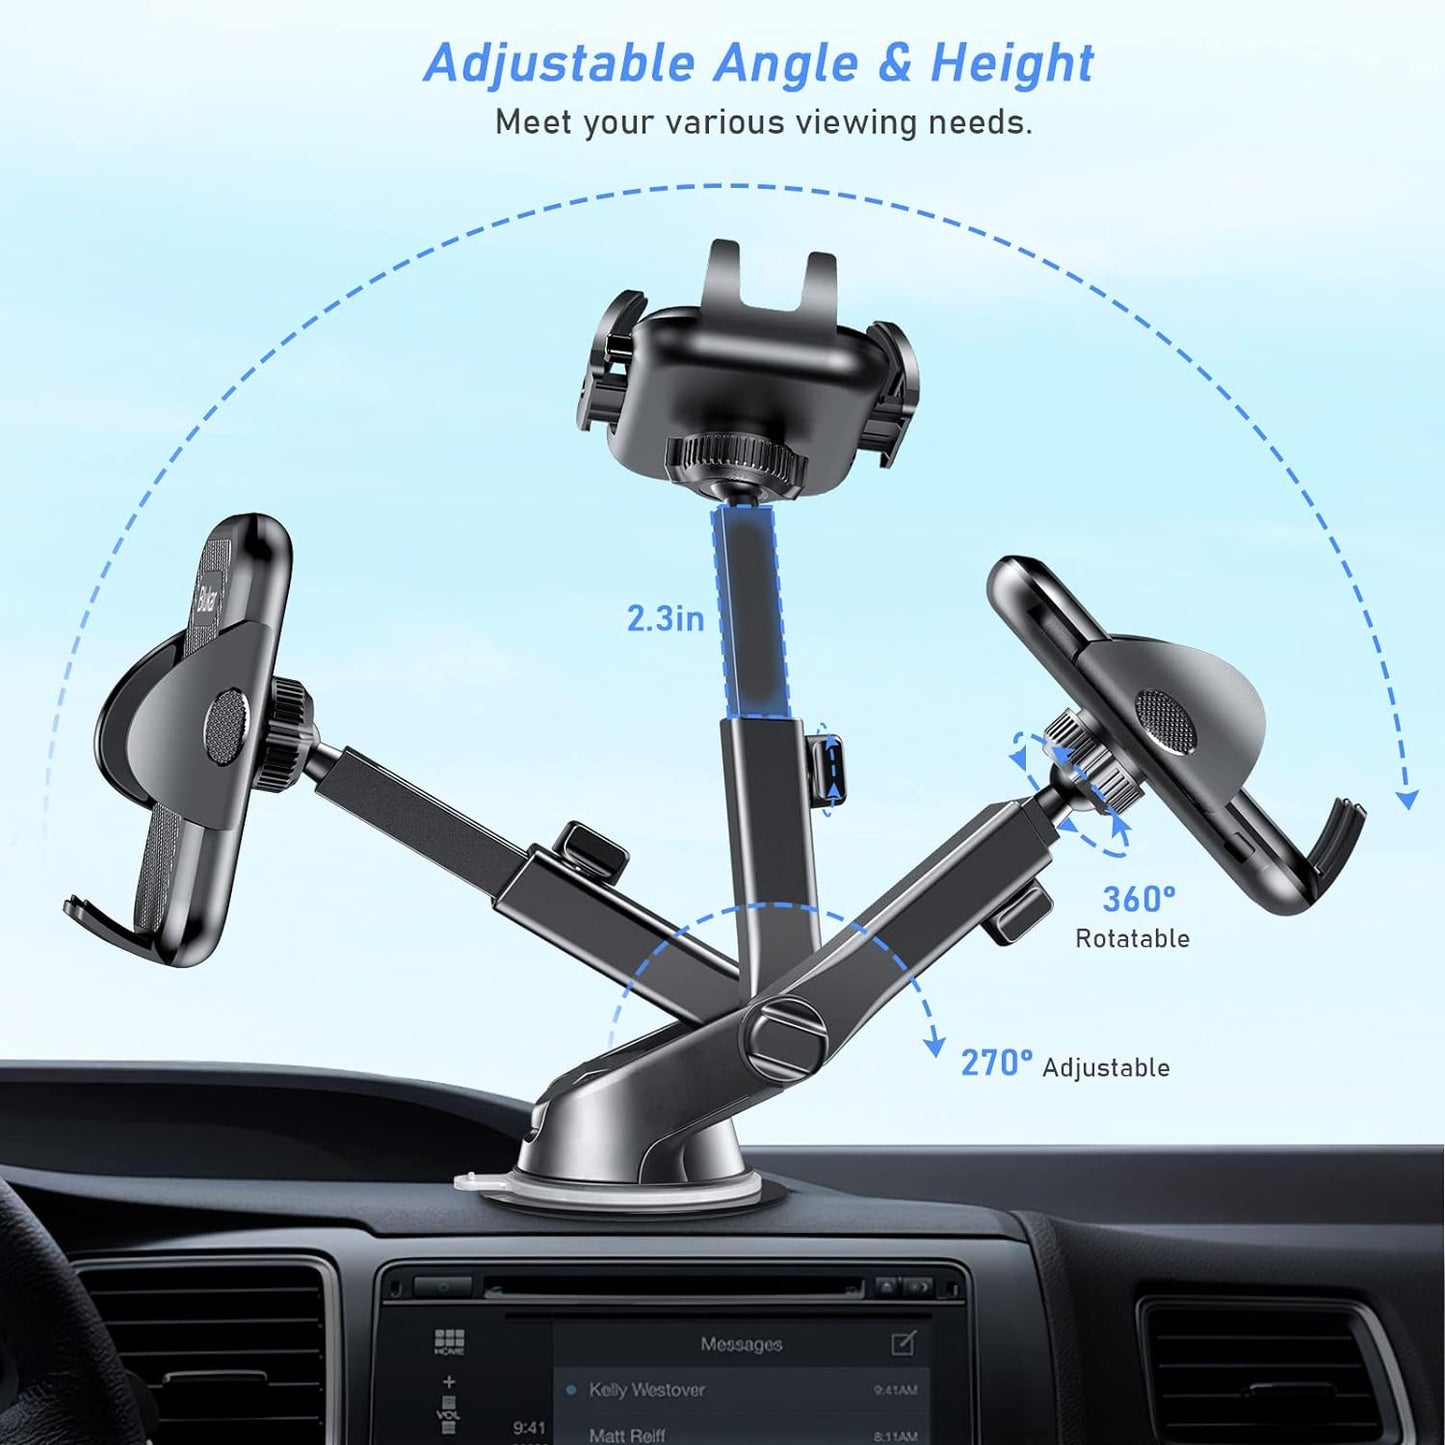 Car Phone Holder Blukar Adjustable Car Phone Mount Cradle 360° Rotation - 4 in 1